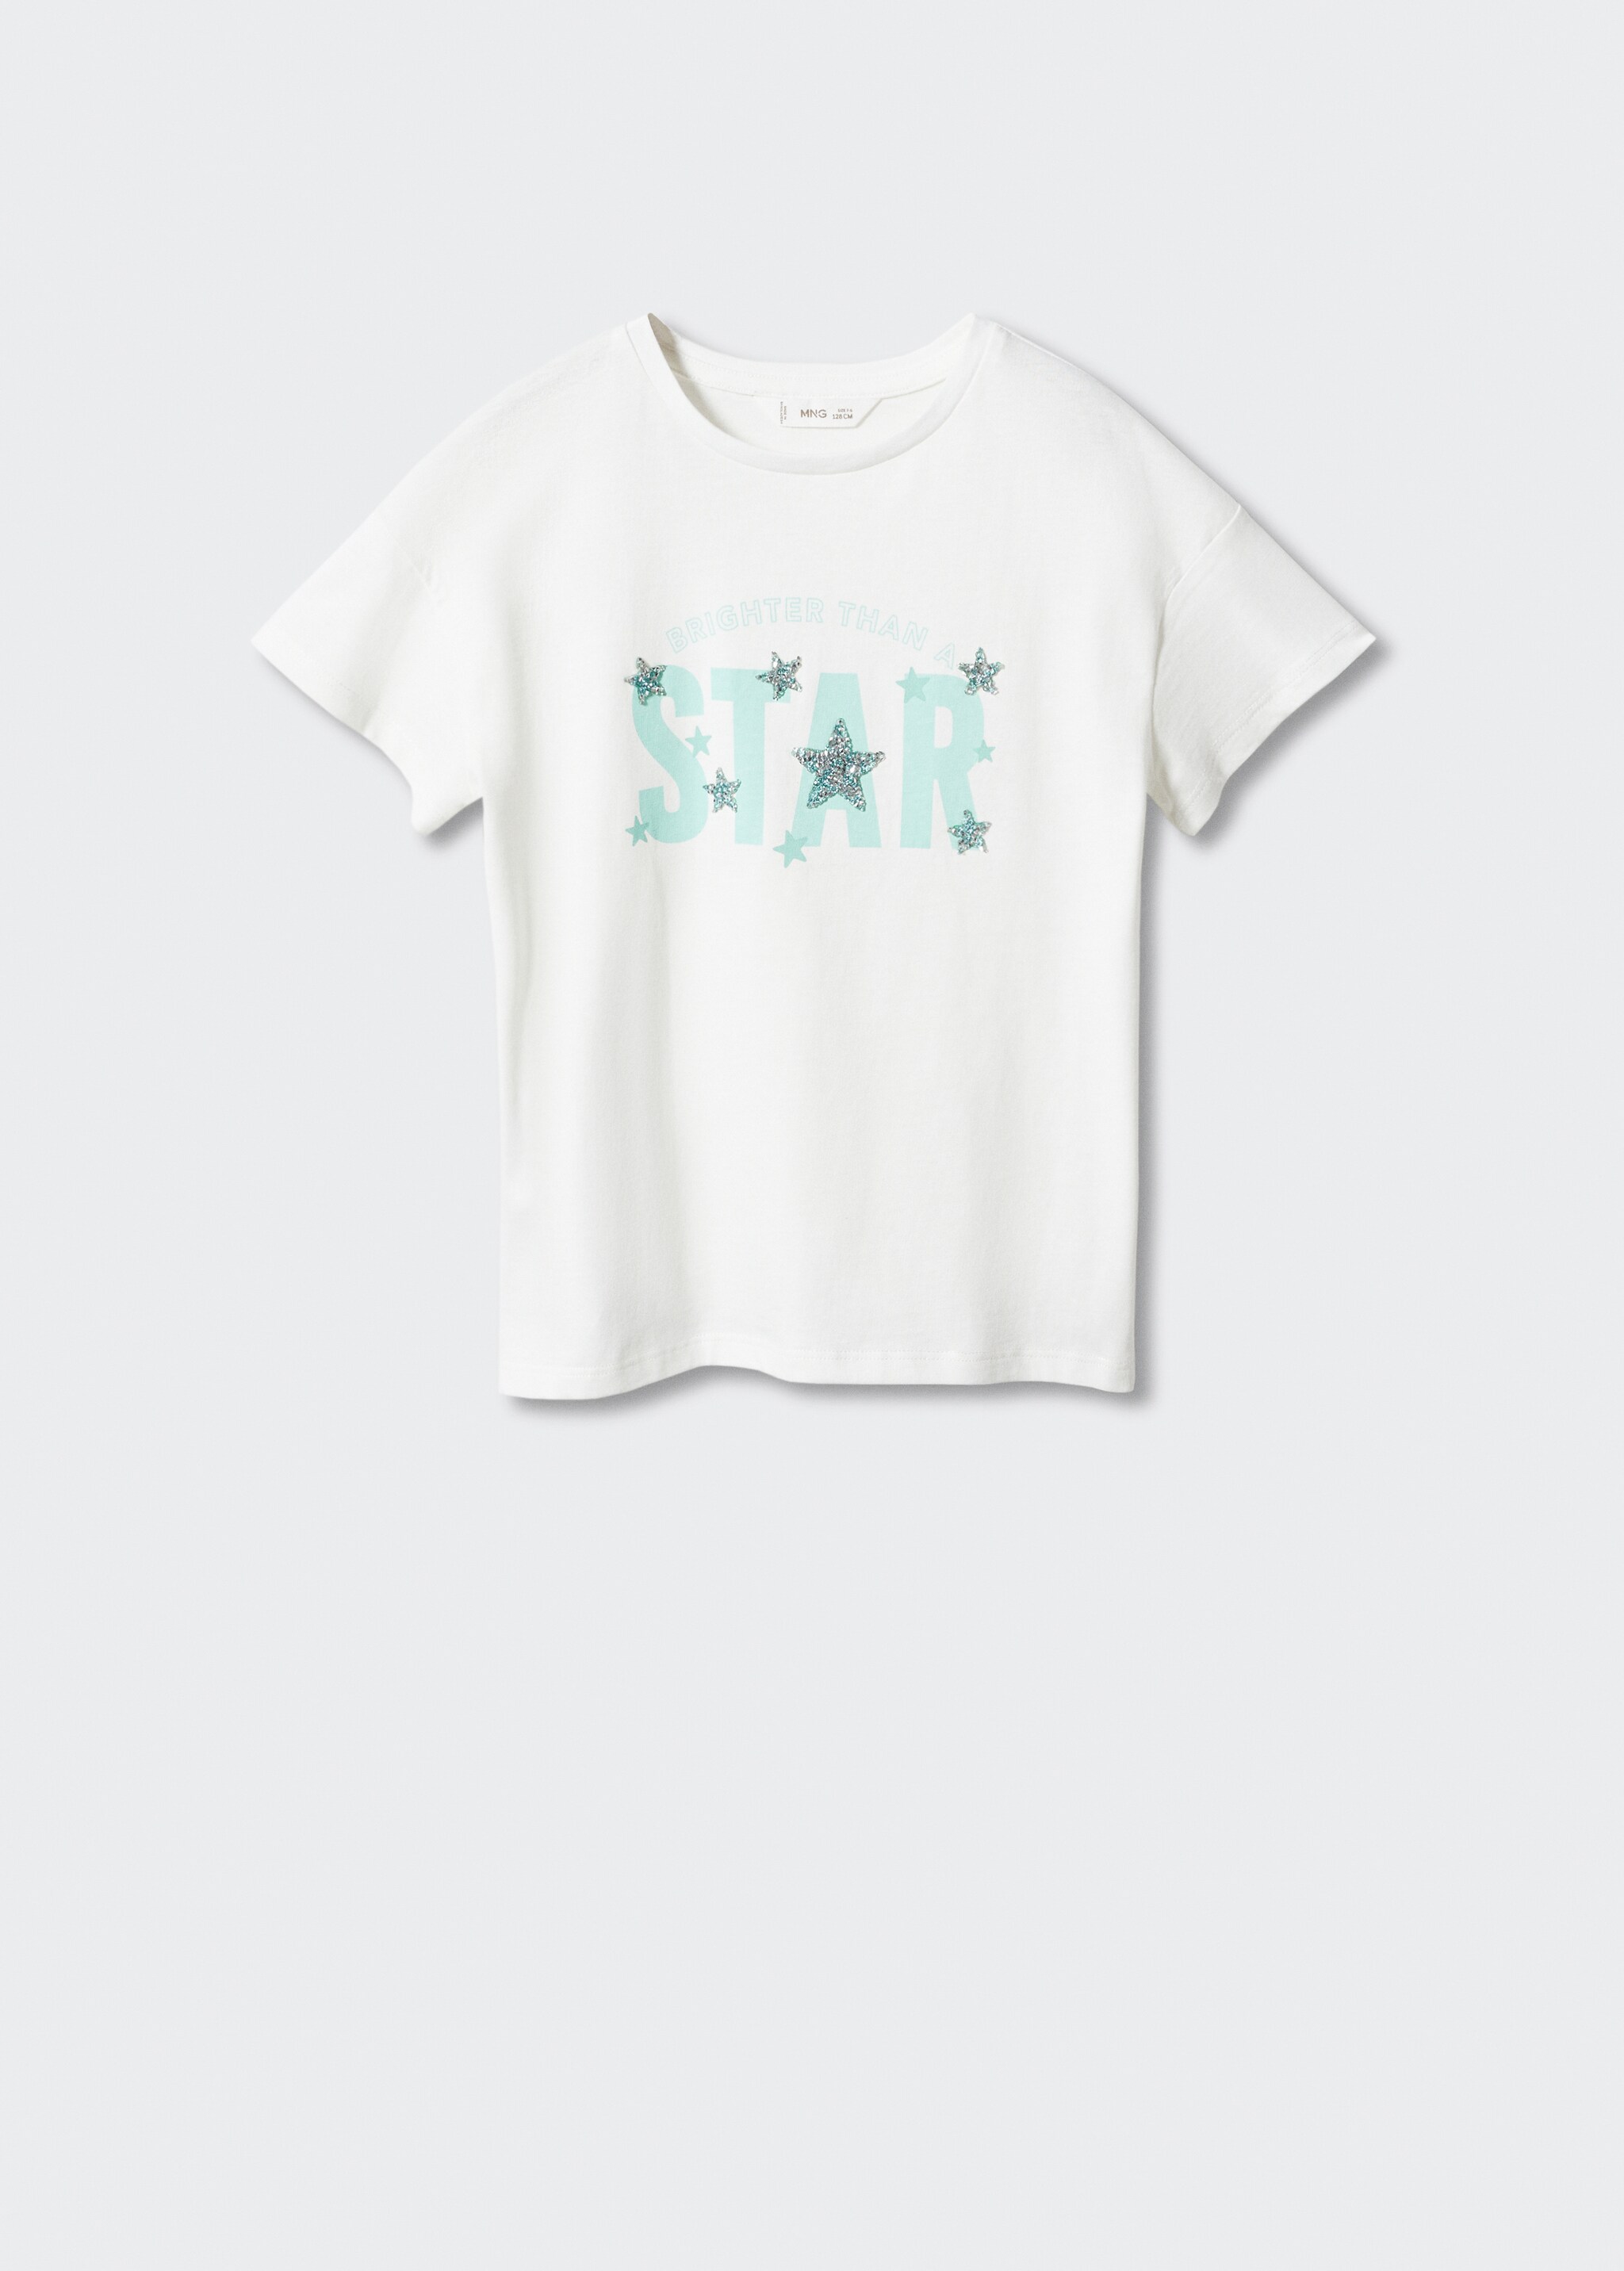 Camiseta estrellas - Artículo sin modelo